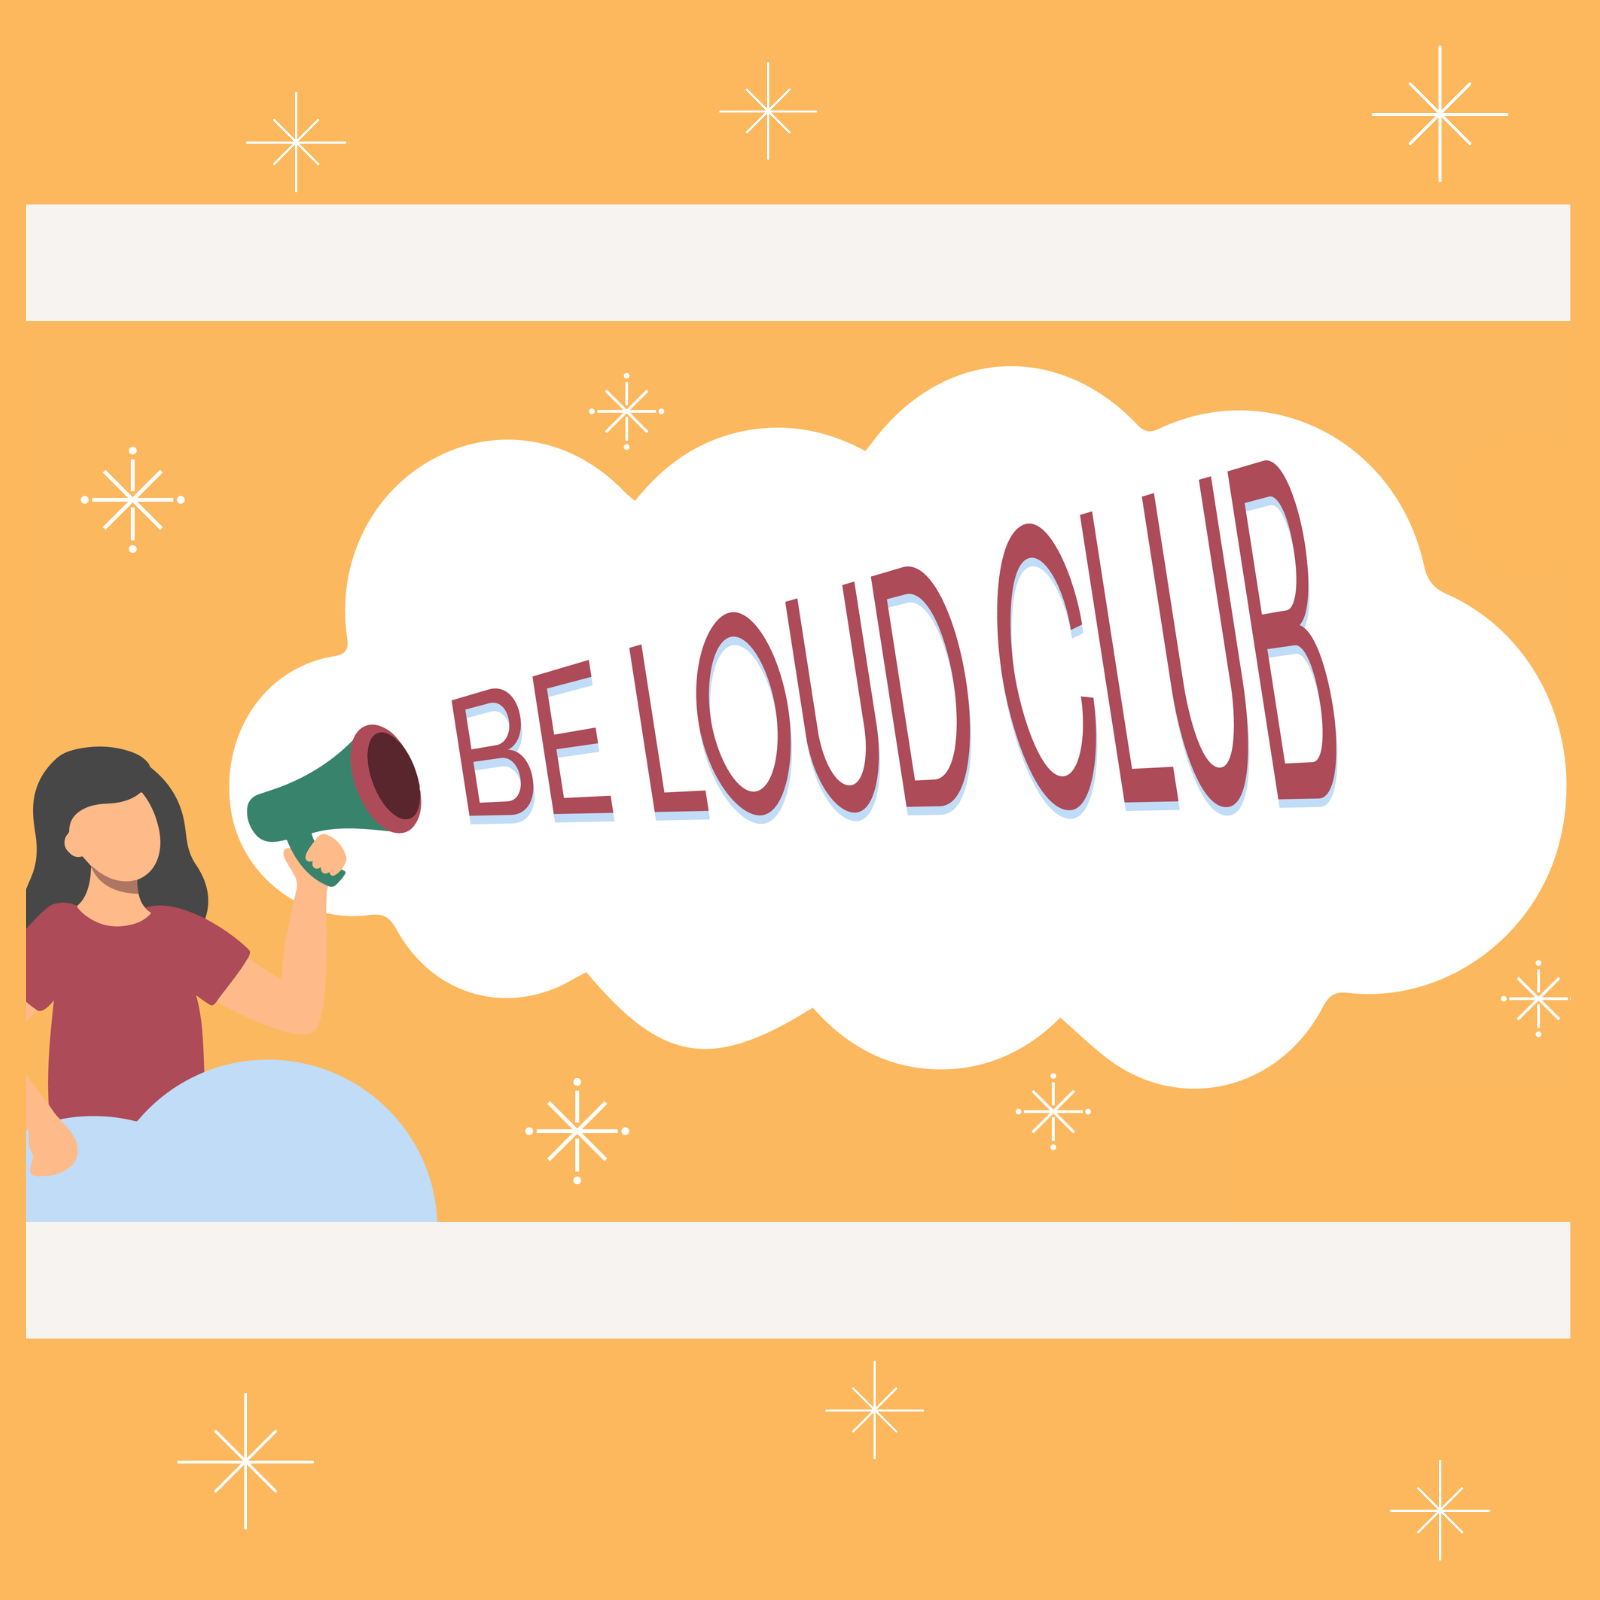 Девушка держит мегафон с надписью BE LOUD Club над белым облаком